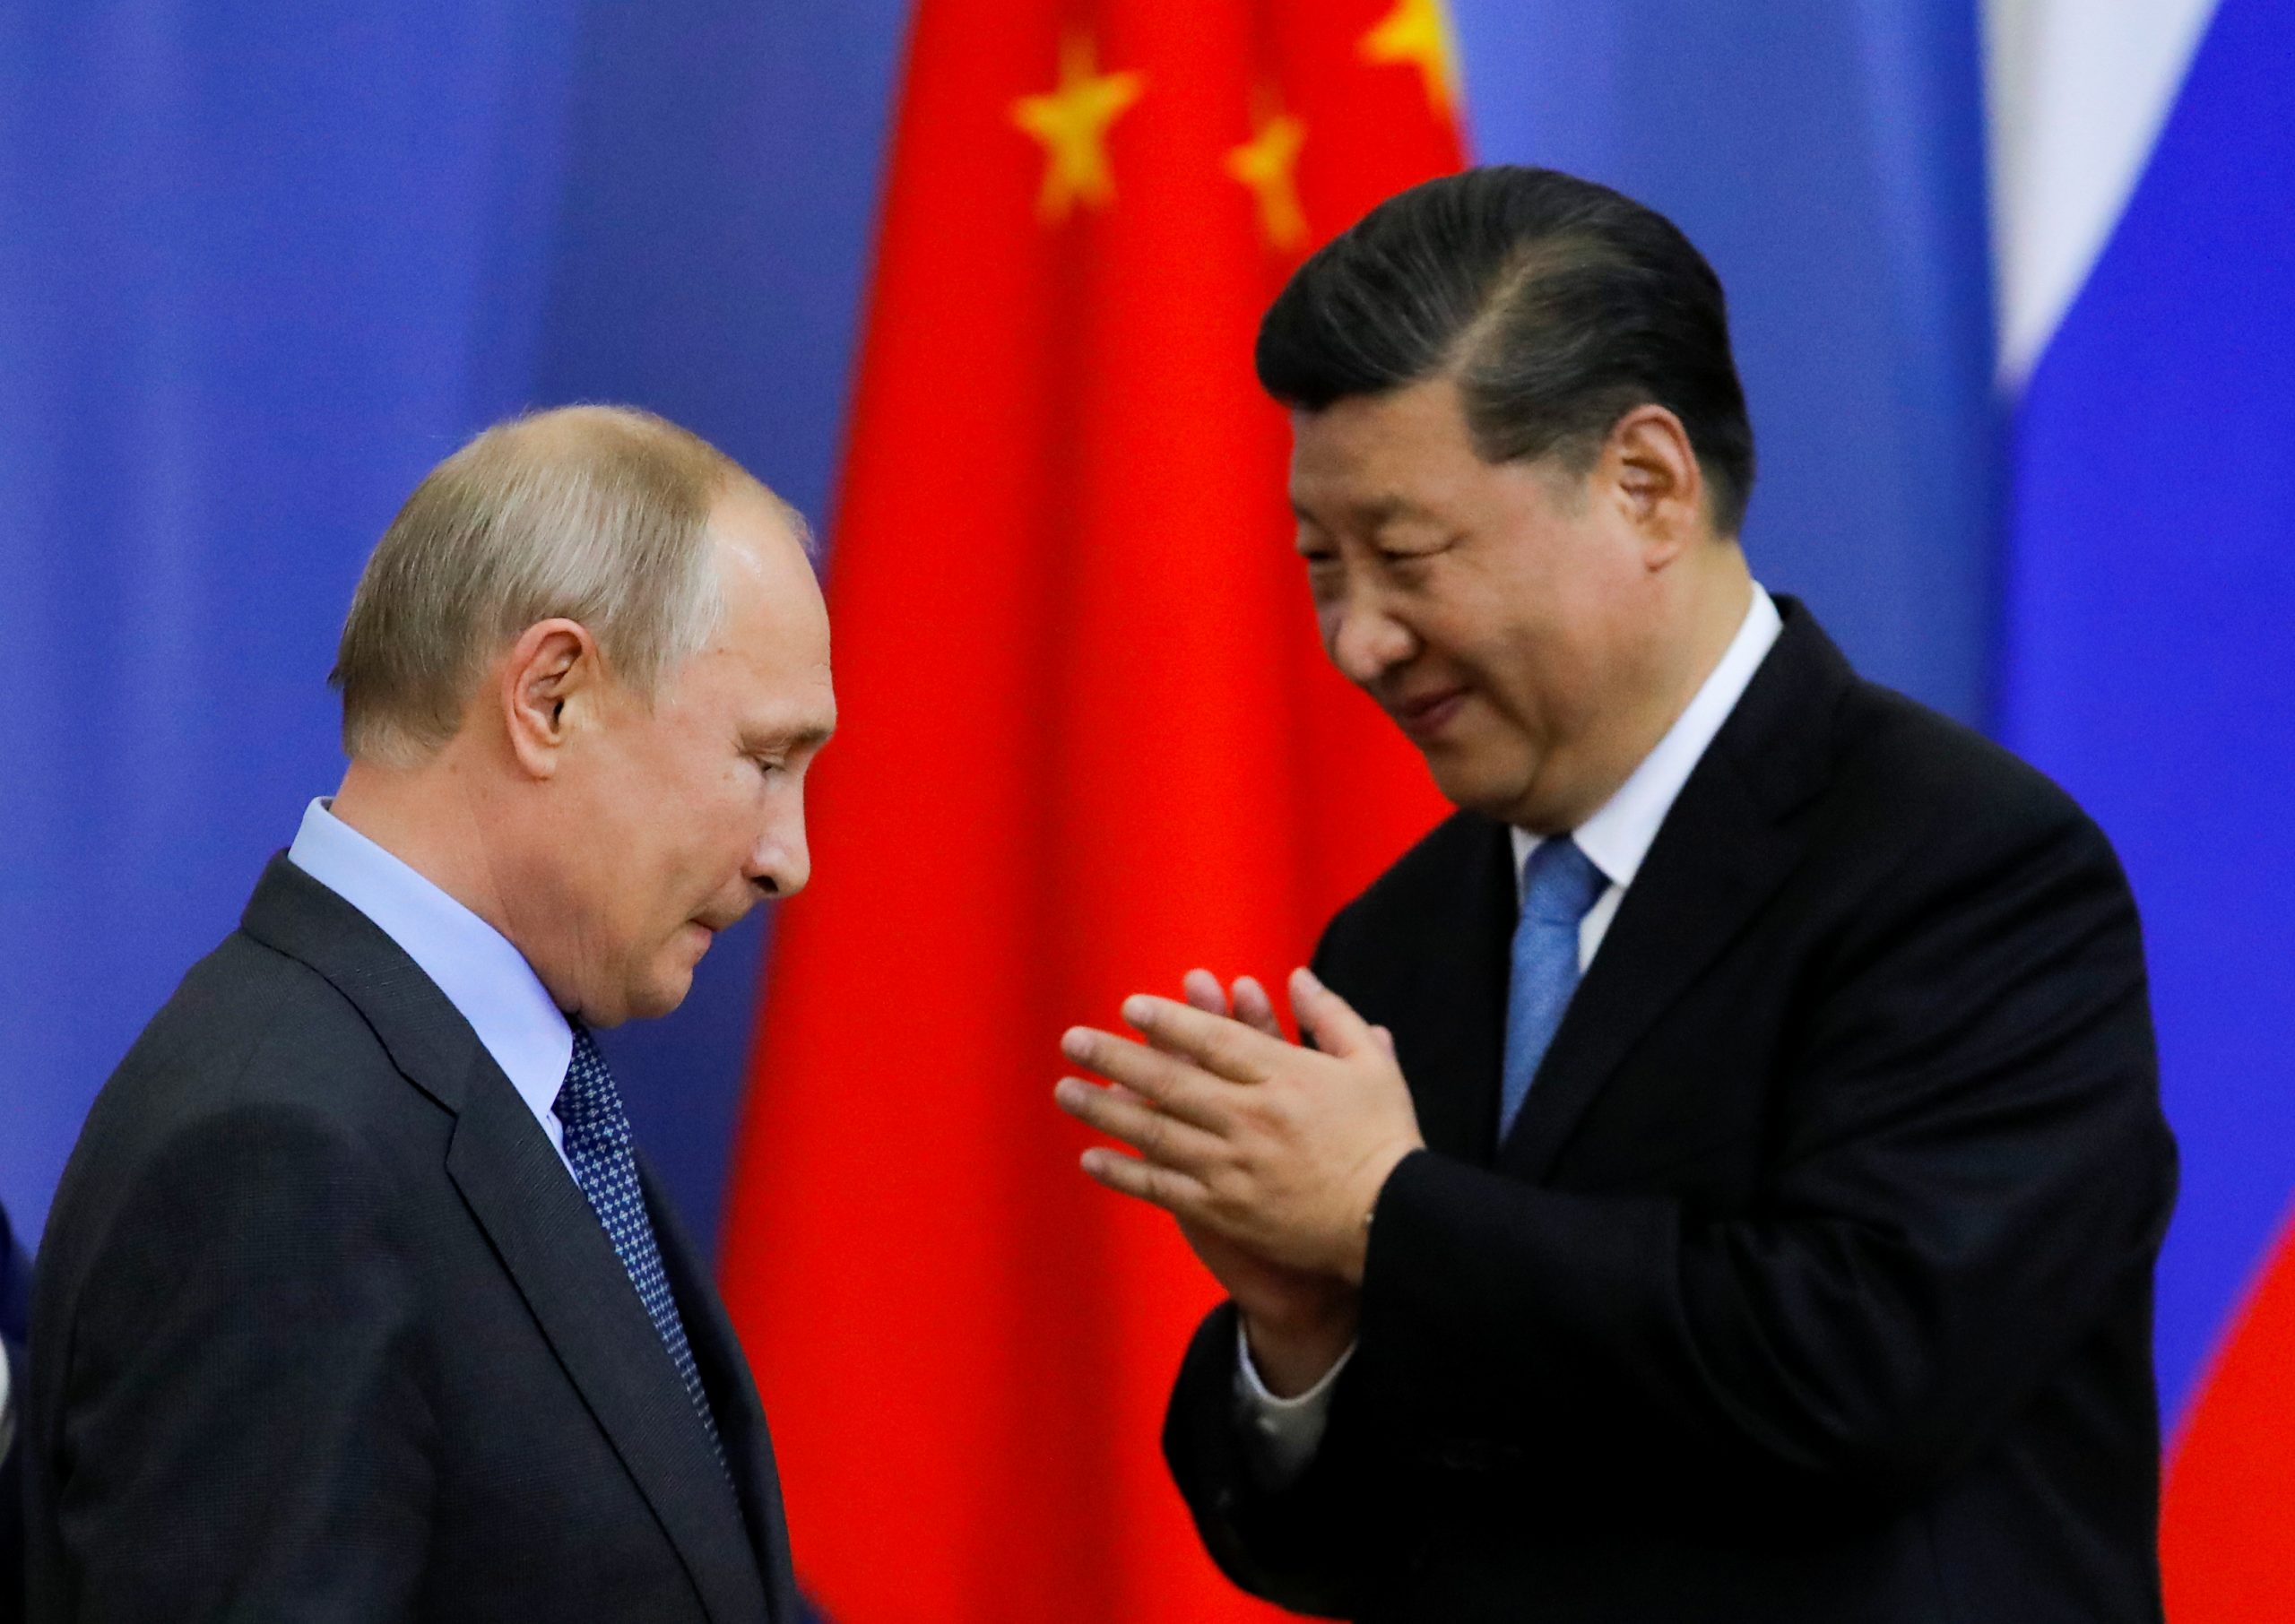 Ανάλυση: Τι συμβαίνει πραγματικά μεταξύ Ρωσίας και Κίνας